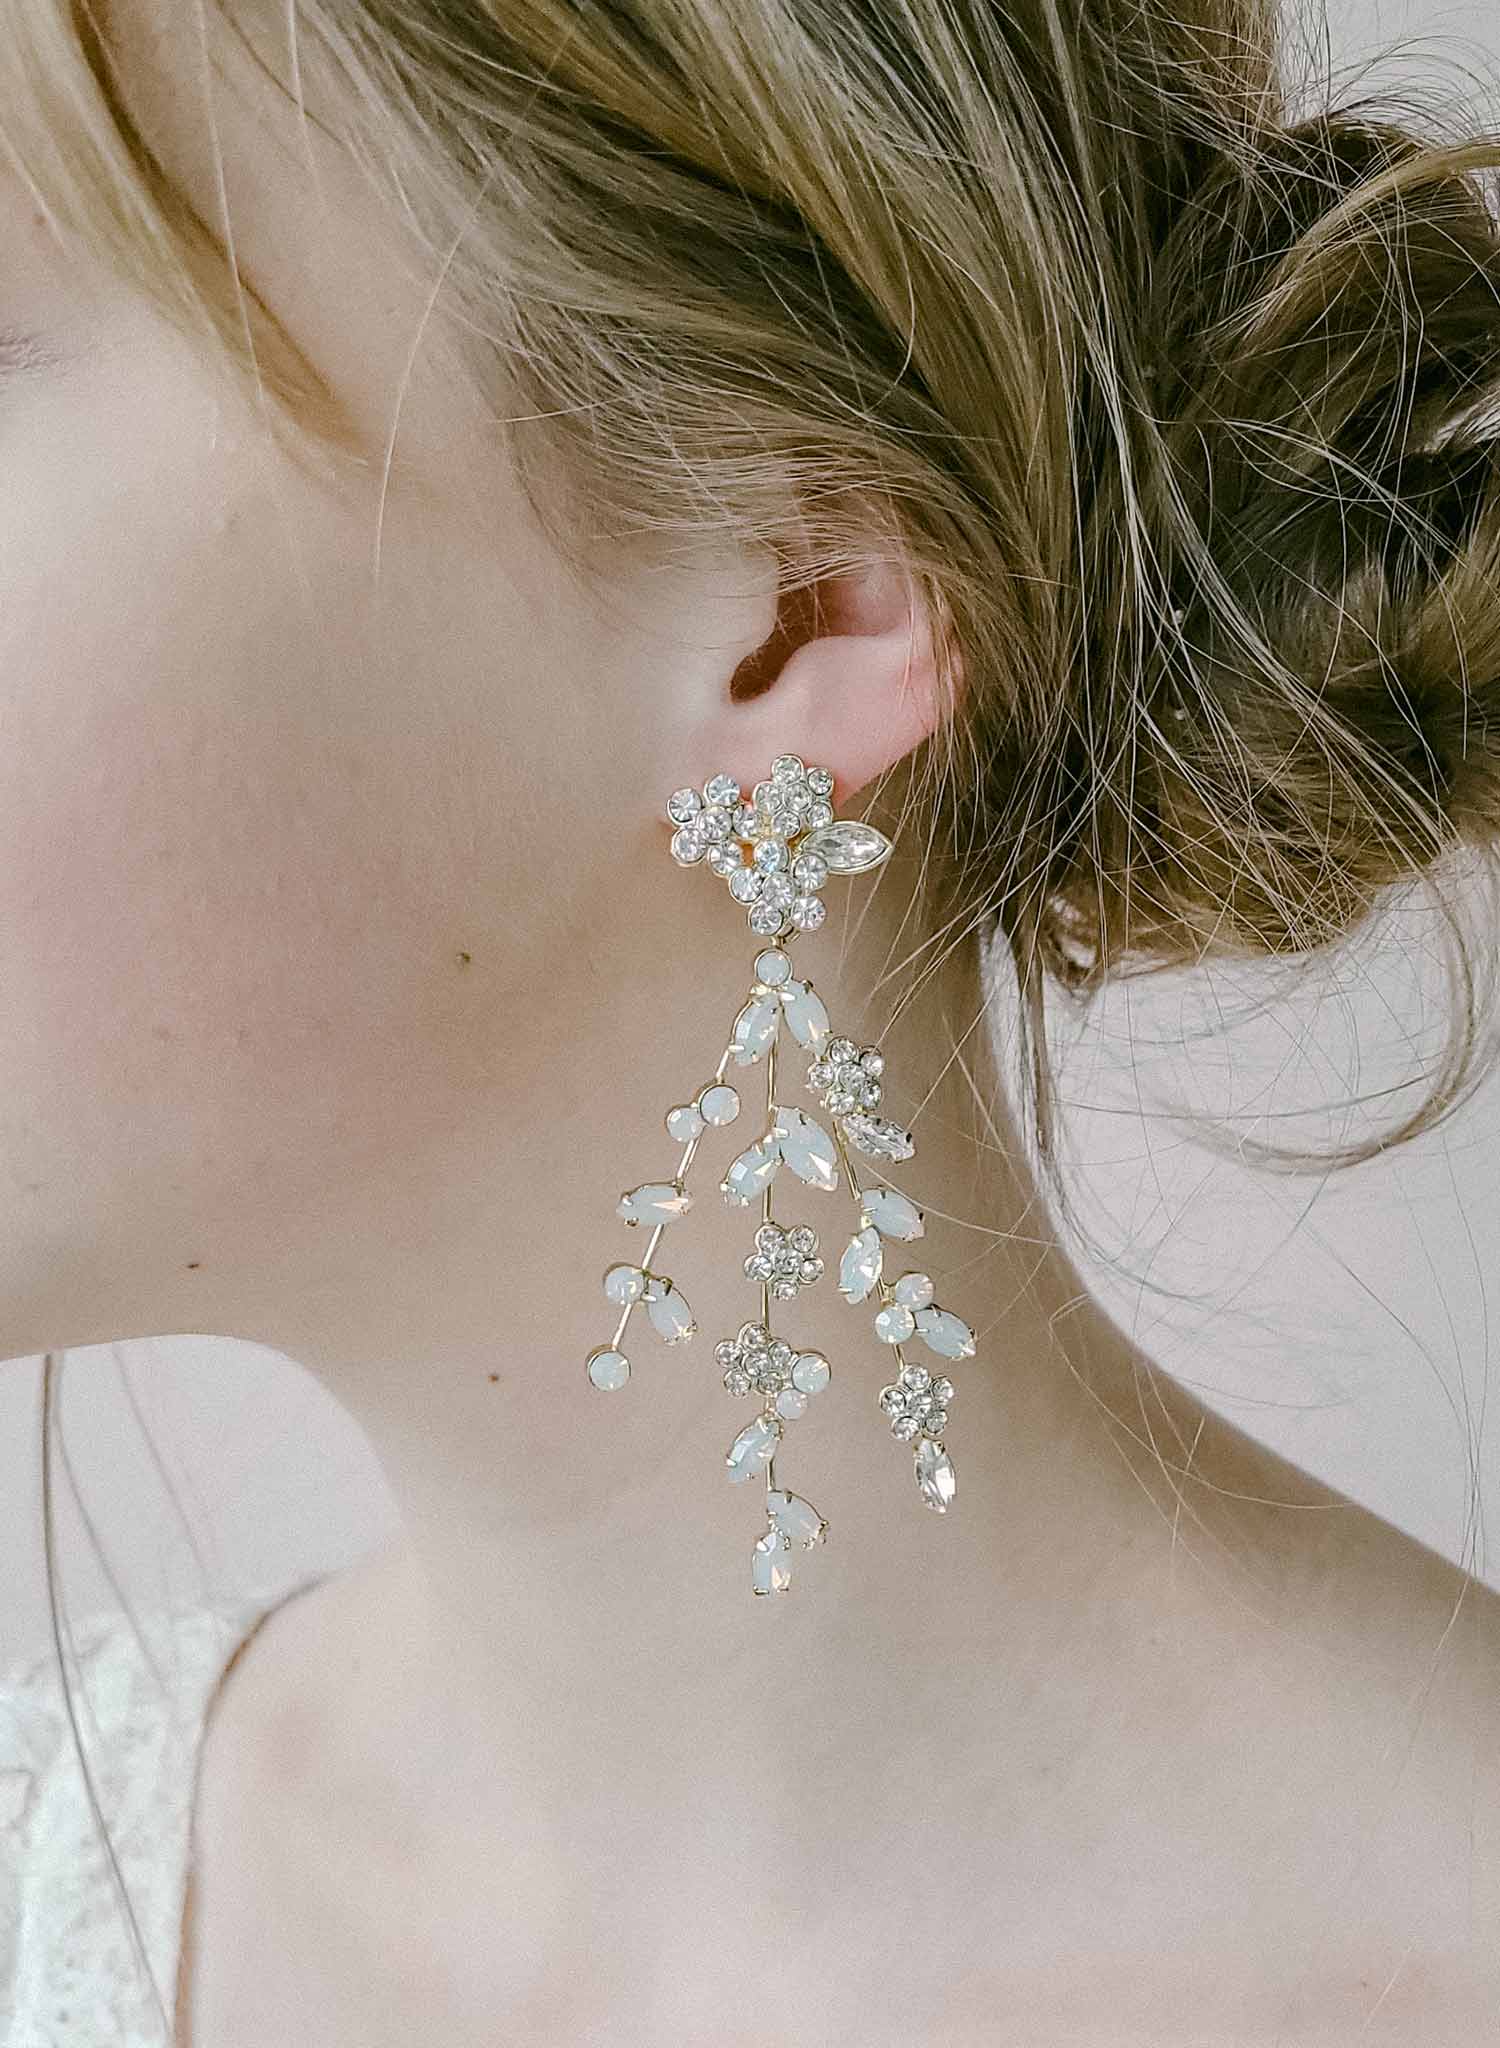 Amazon.com: JWICOS Fashion Chandelier Tassel Long Earrings for Women Girls  Rhinestone Statement Earrings Drop Dangle Earrings for Wedding Valentine's  Day (Silver) : Clothing, Shoes & Jewelry